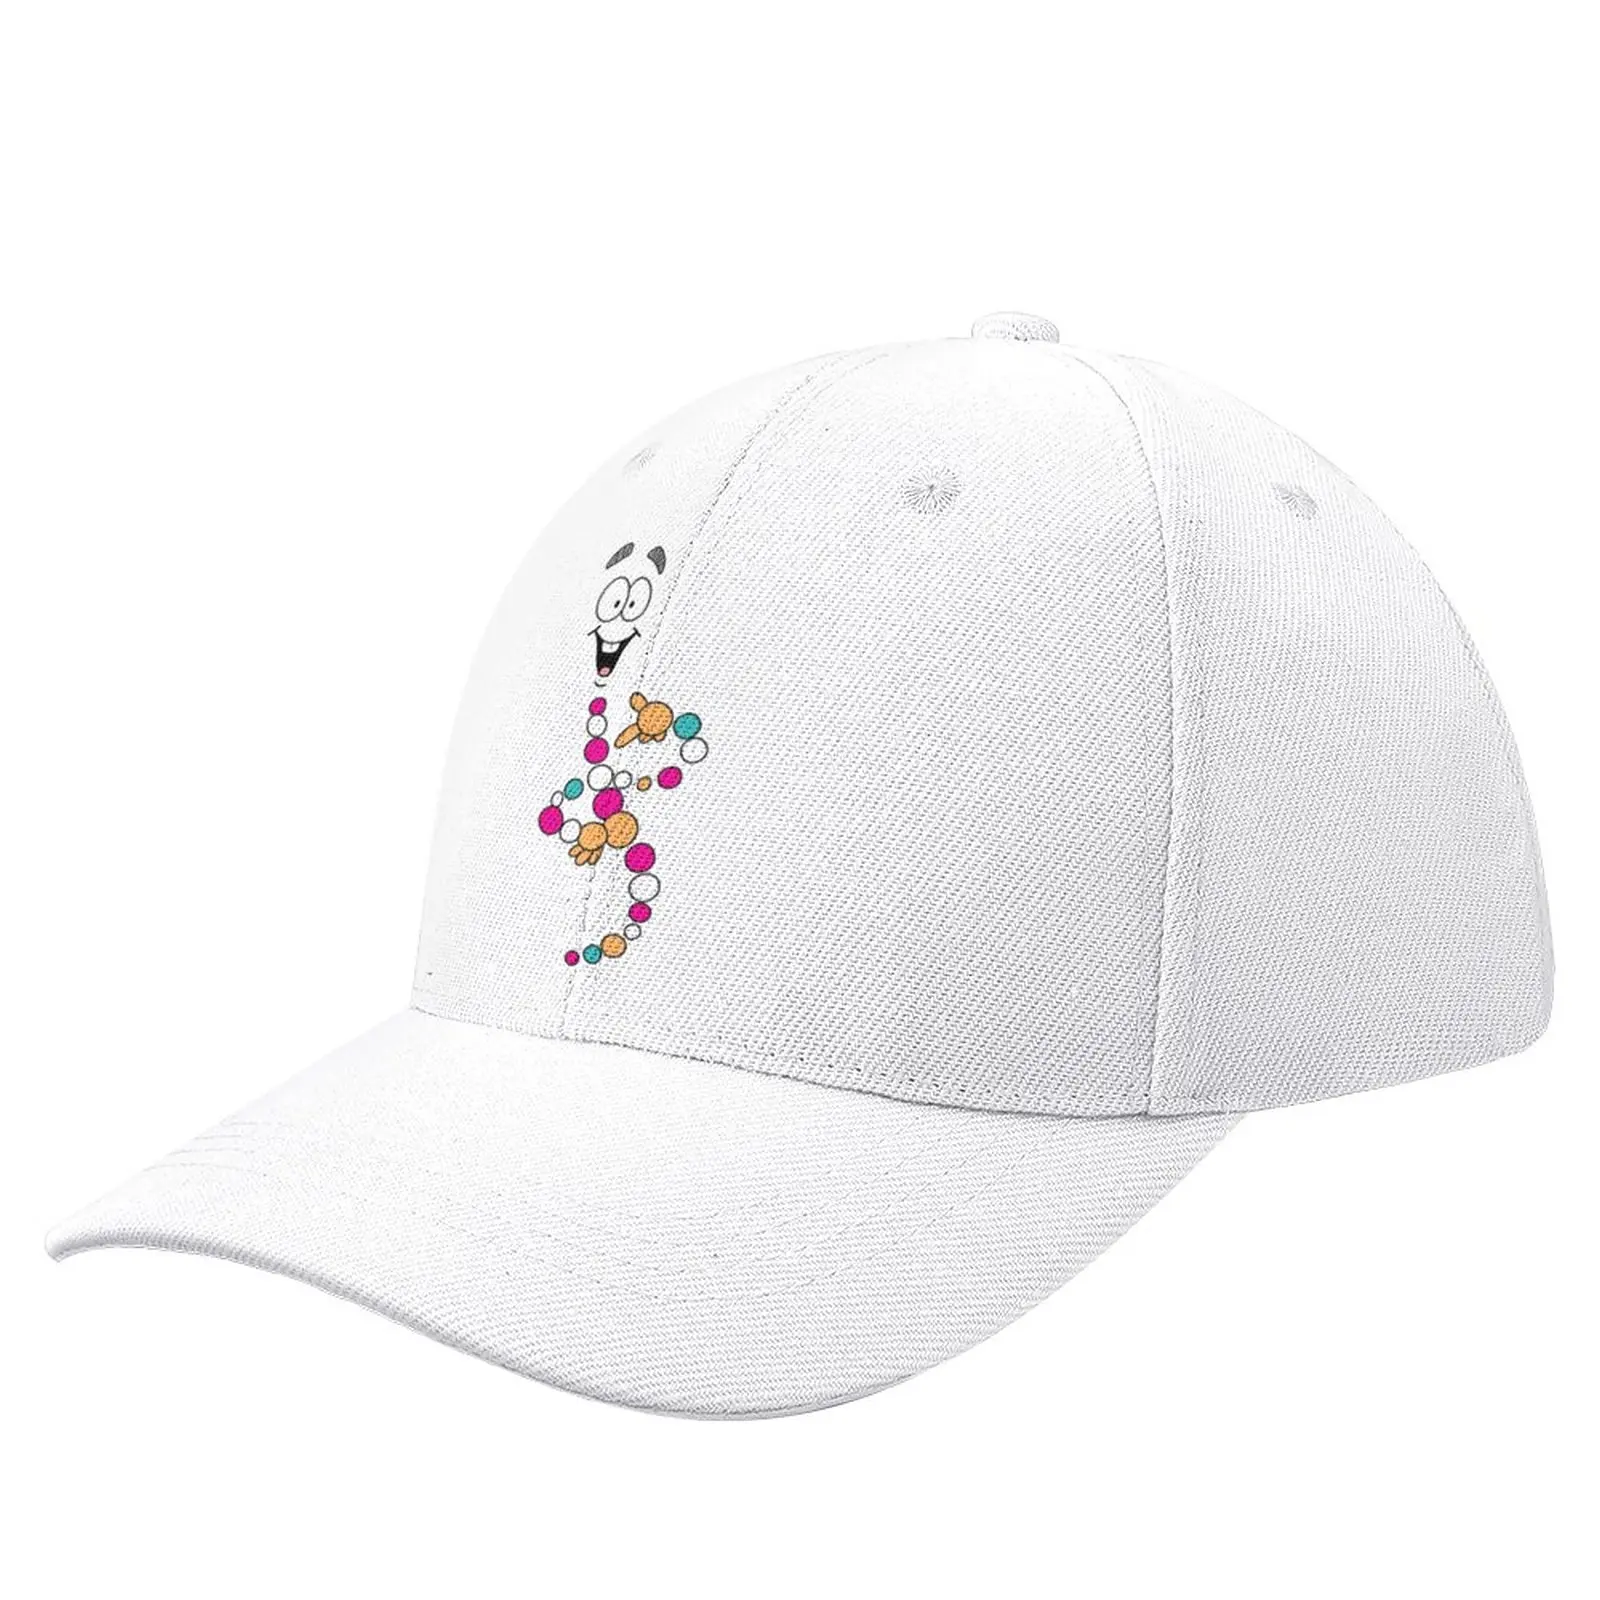 

Mr DNA 1 Baseball Cap derby hat Golf Hat Hat Luxury Brand Men Caps Women'S